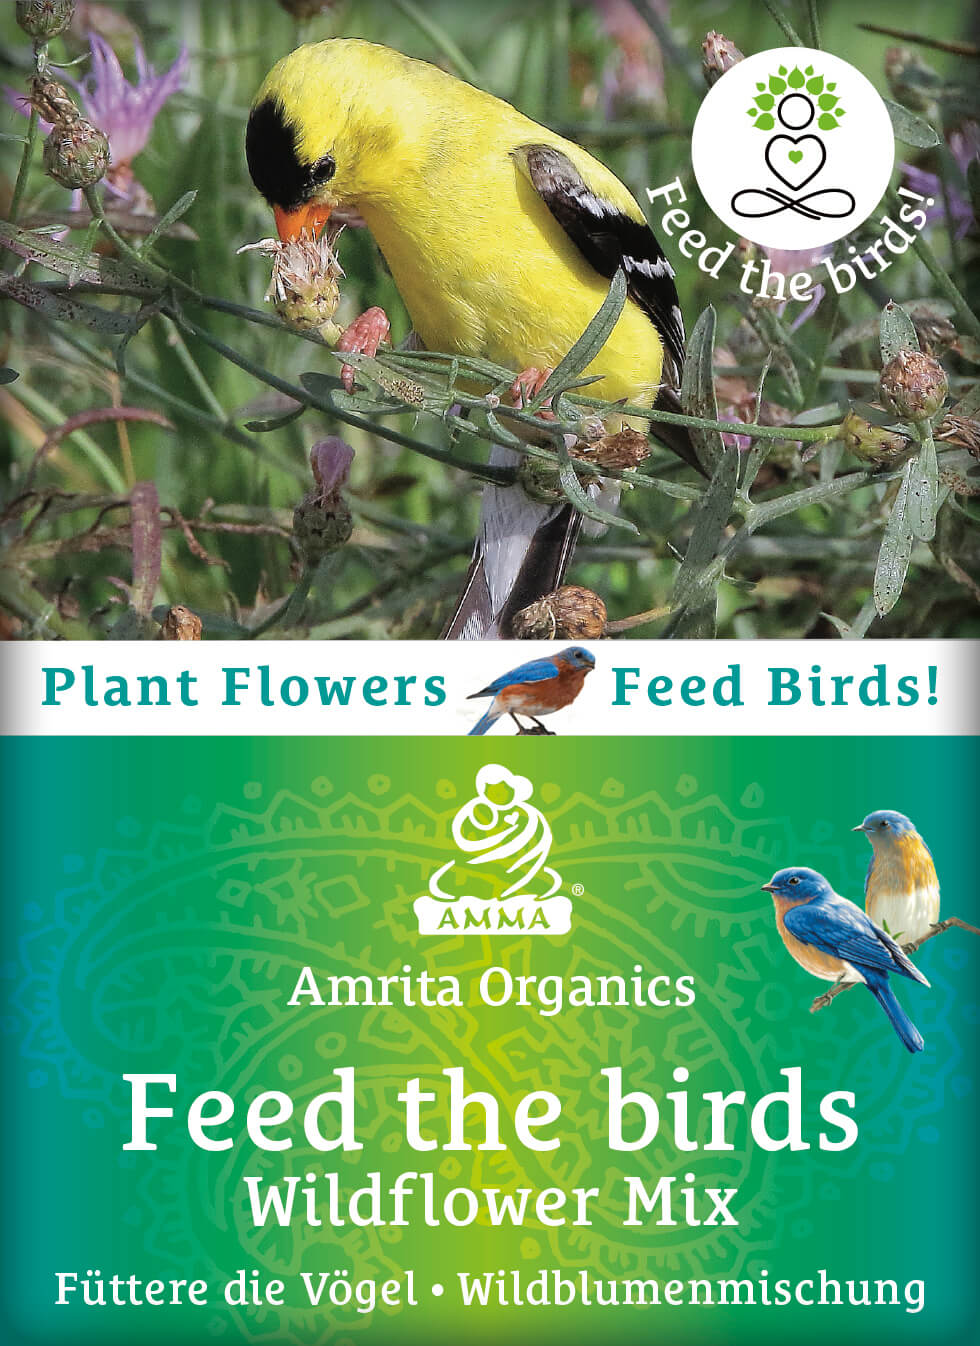 Füttere die Vögel - Wildblumenmischung, bio